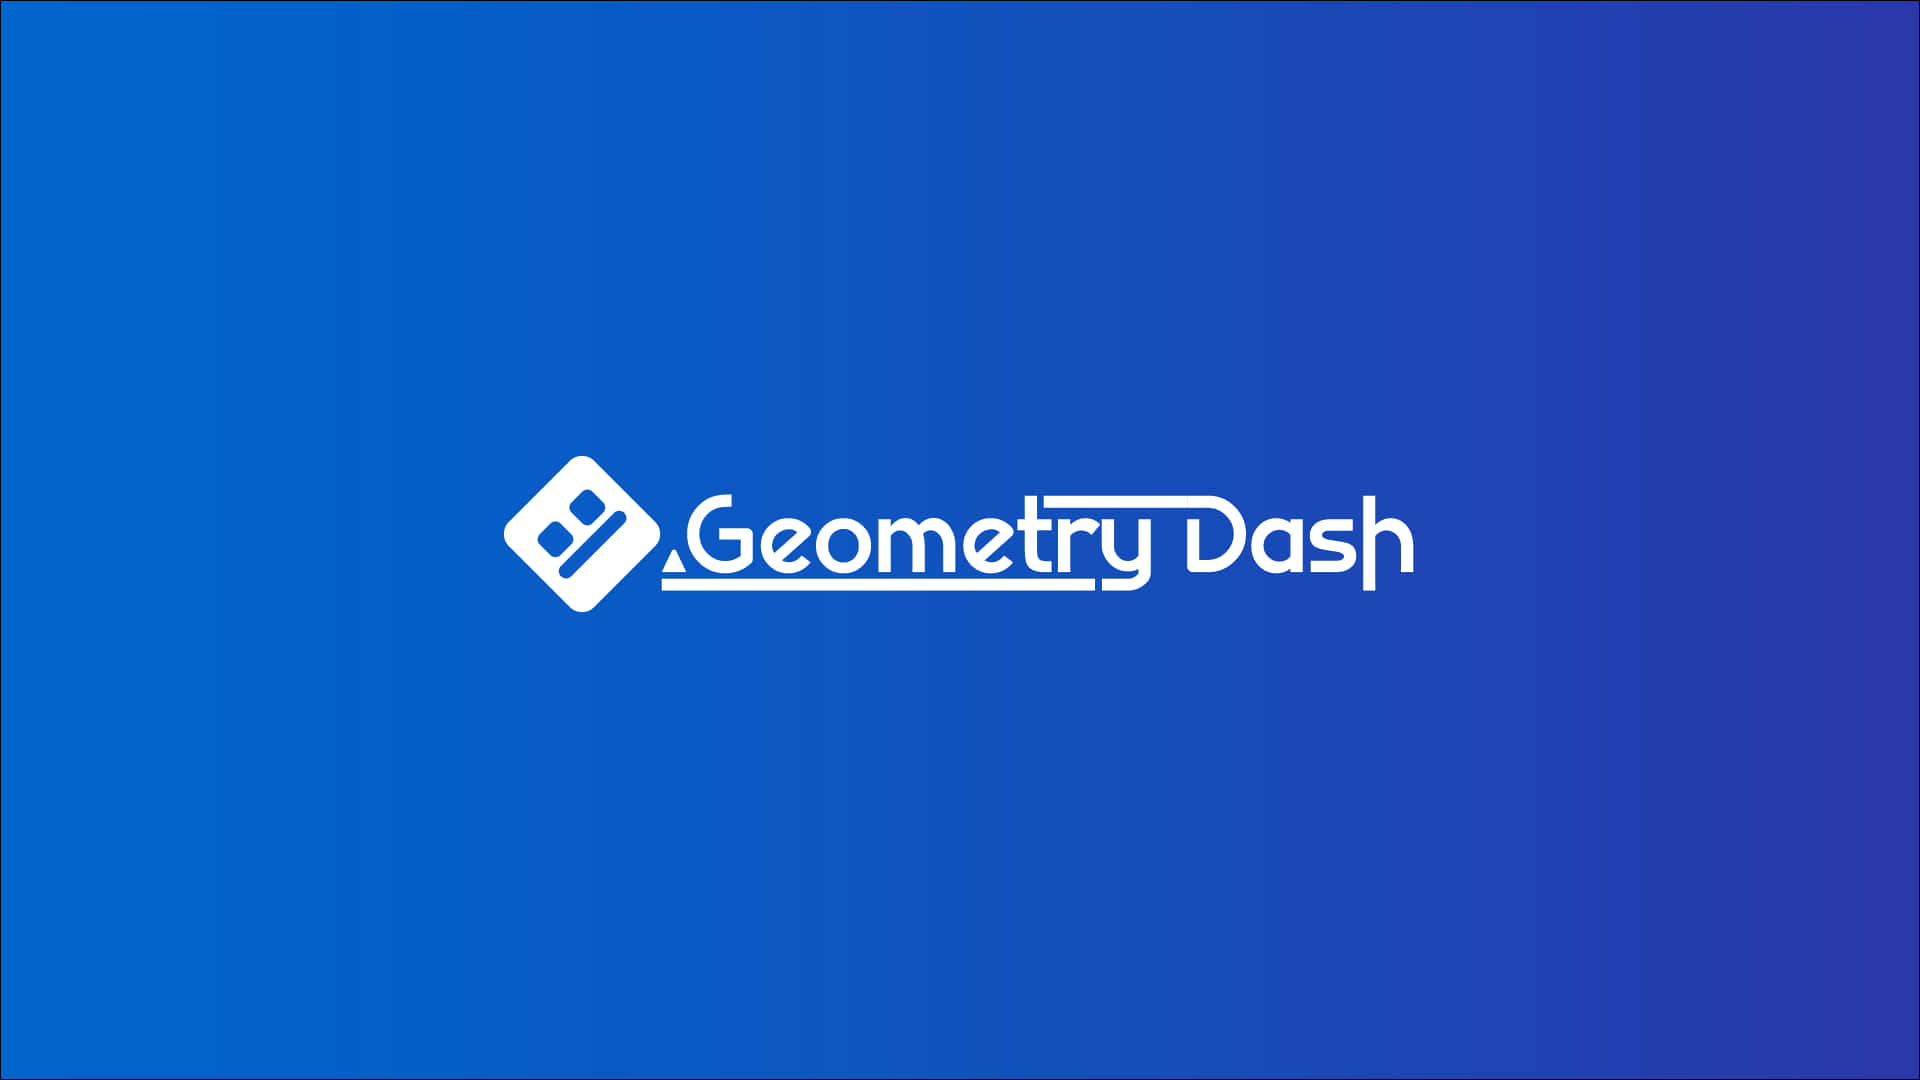 Logotipobranco Do Geometry Dash Em Azul. Papel de Parede